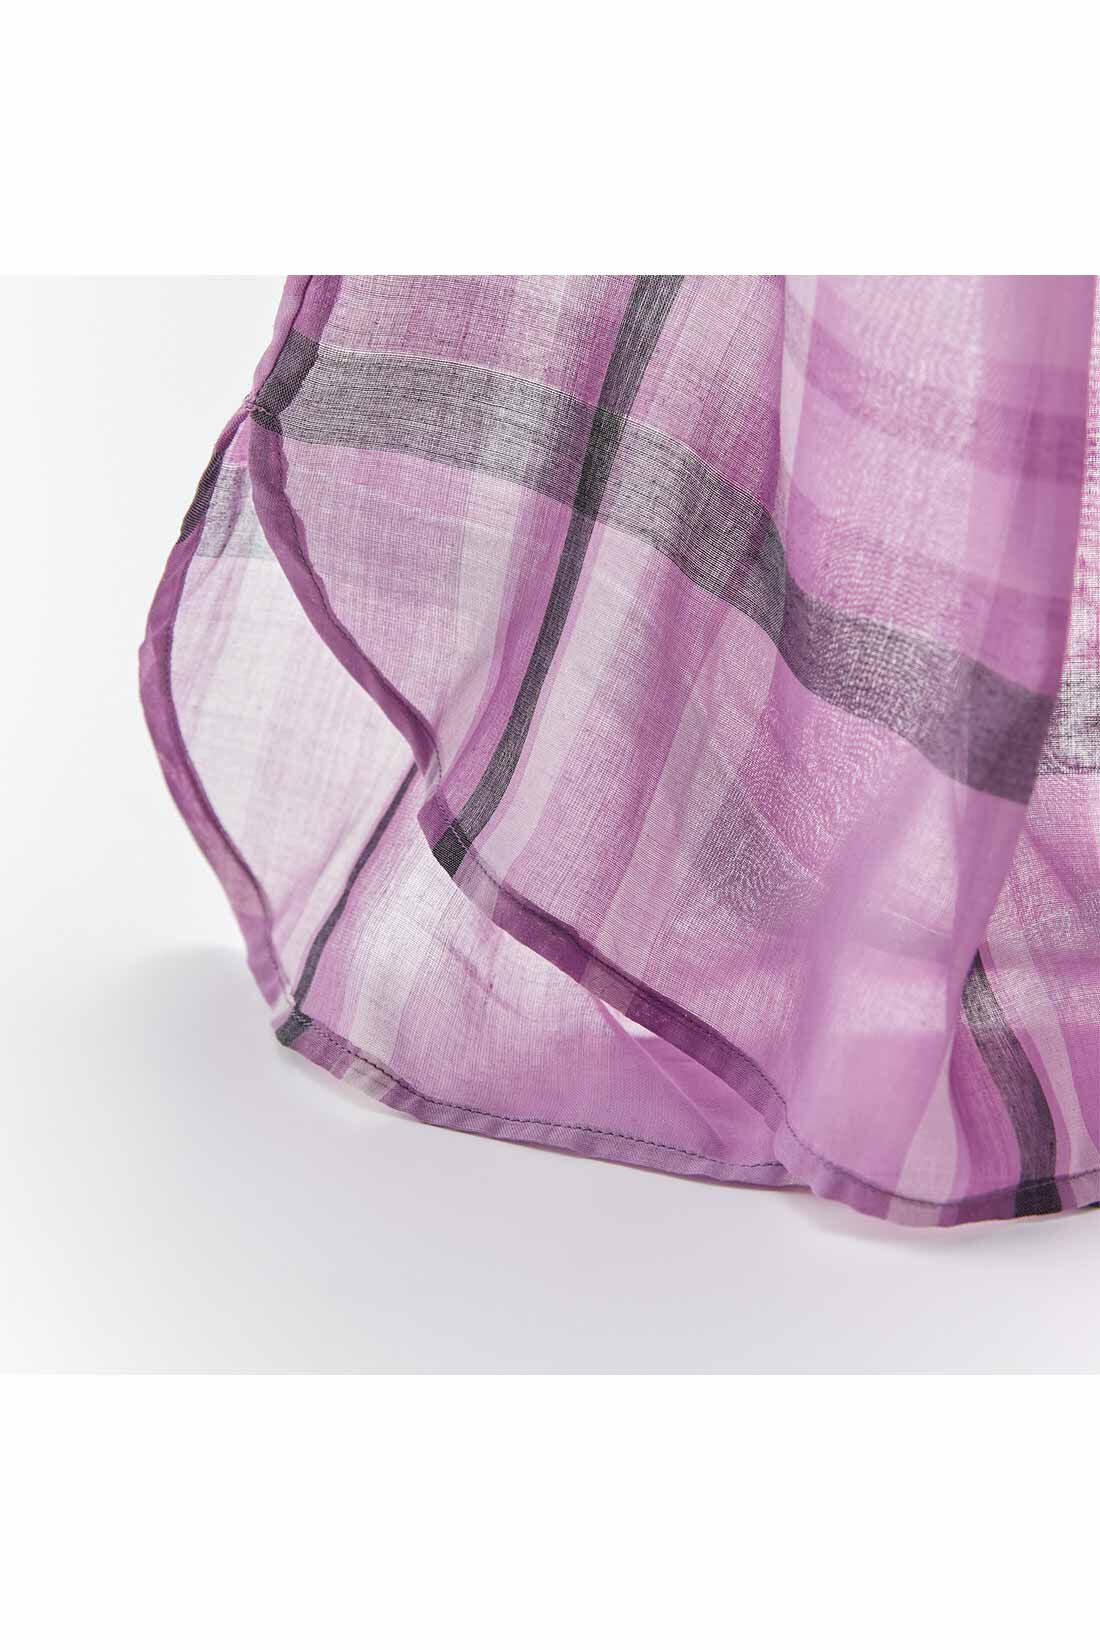 IEDIT|IEDIT[イディット]　きくちあつこさんコラボ チェックシアーブラウス〈ピンクパープル〉|うっすらシルエットが透ける薄手の布はく素材。先染めのチェック柄は、華やかなピンクパープルに白と黒をきかせたシックな印象のオリジナル配色。